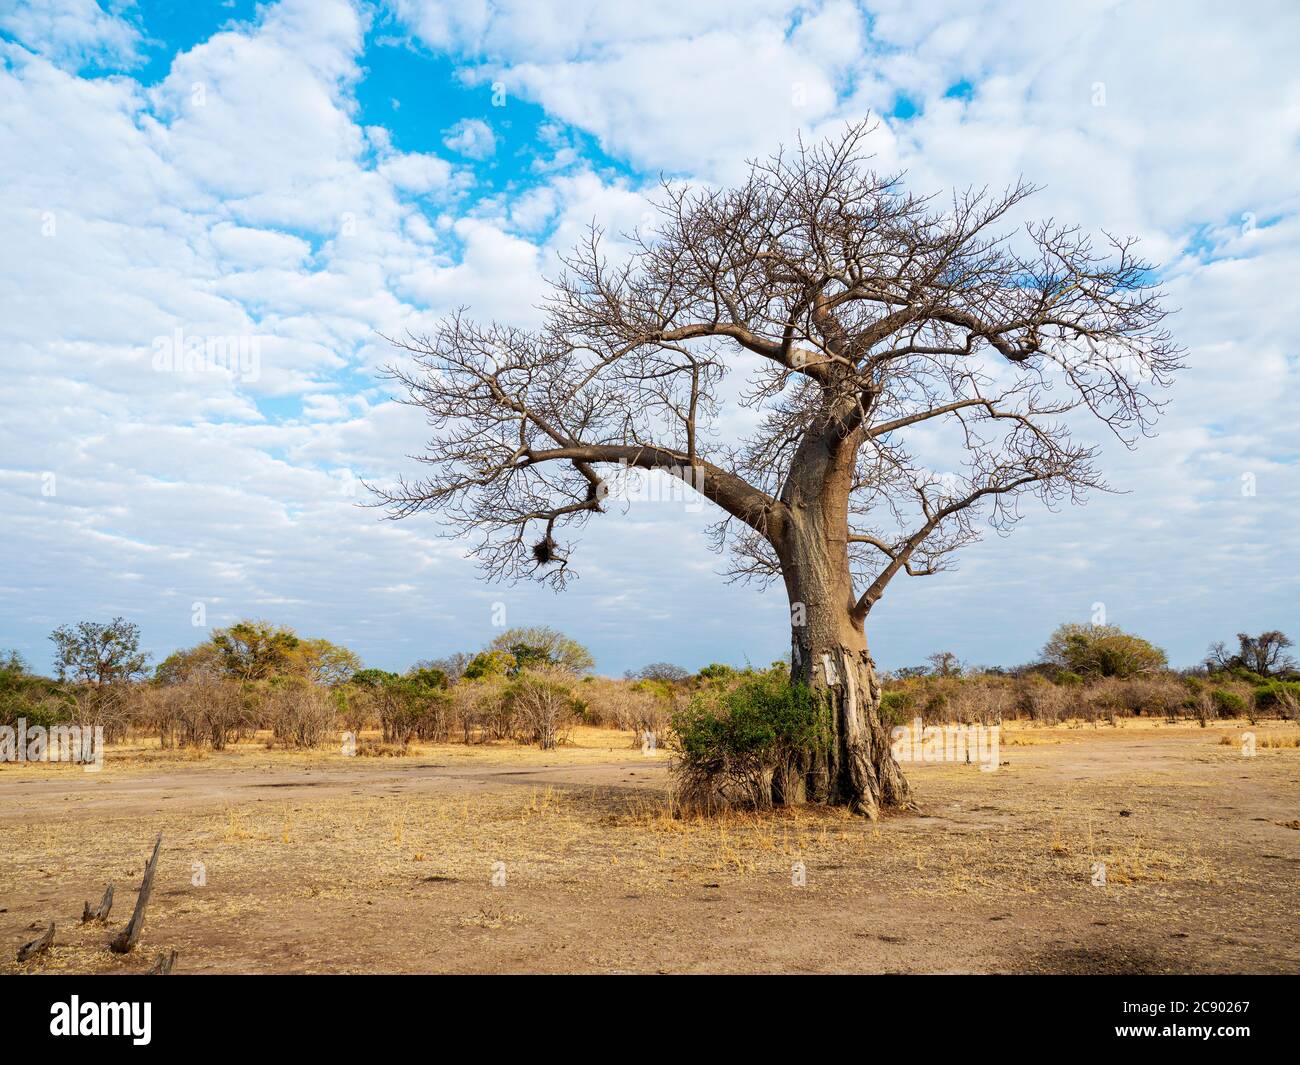 Un très grand baobab, l'Adansonia digitata, montrant des dégâts de recherche d'éléphants dans le parc national de Luangwa Sud, en Zambie. Banque D'Images